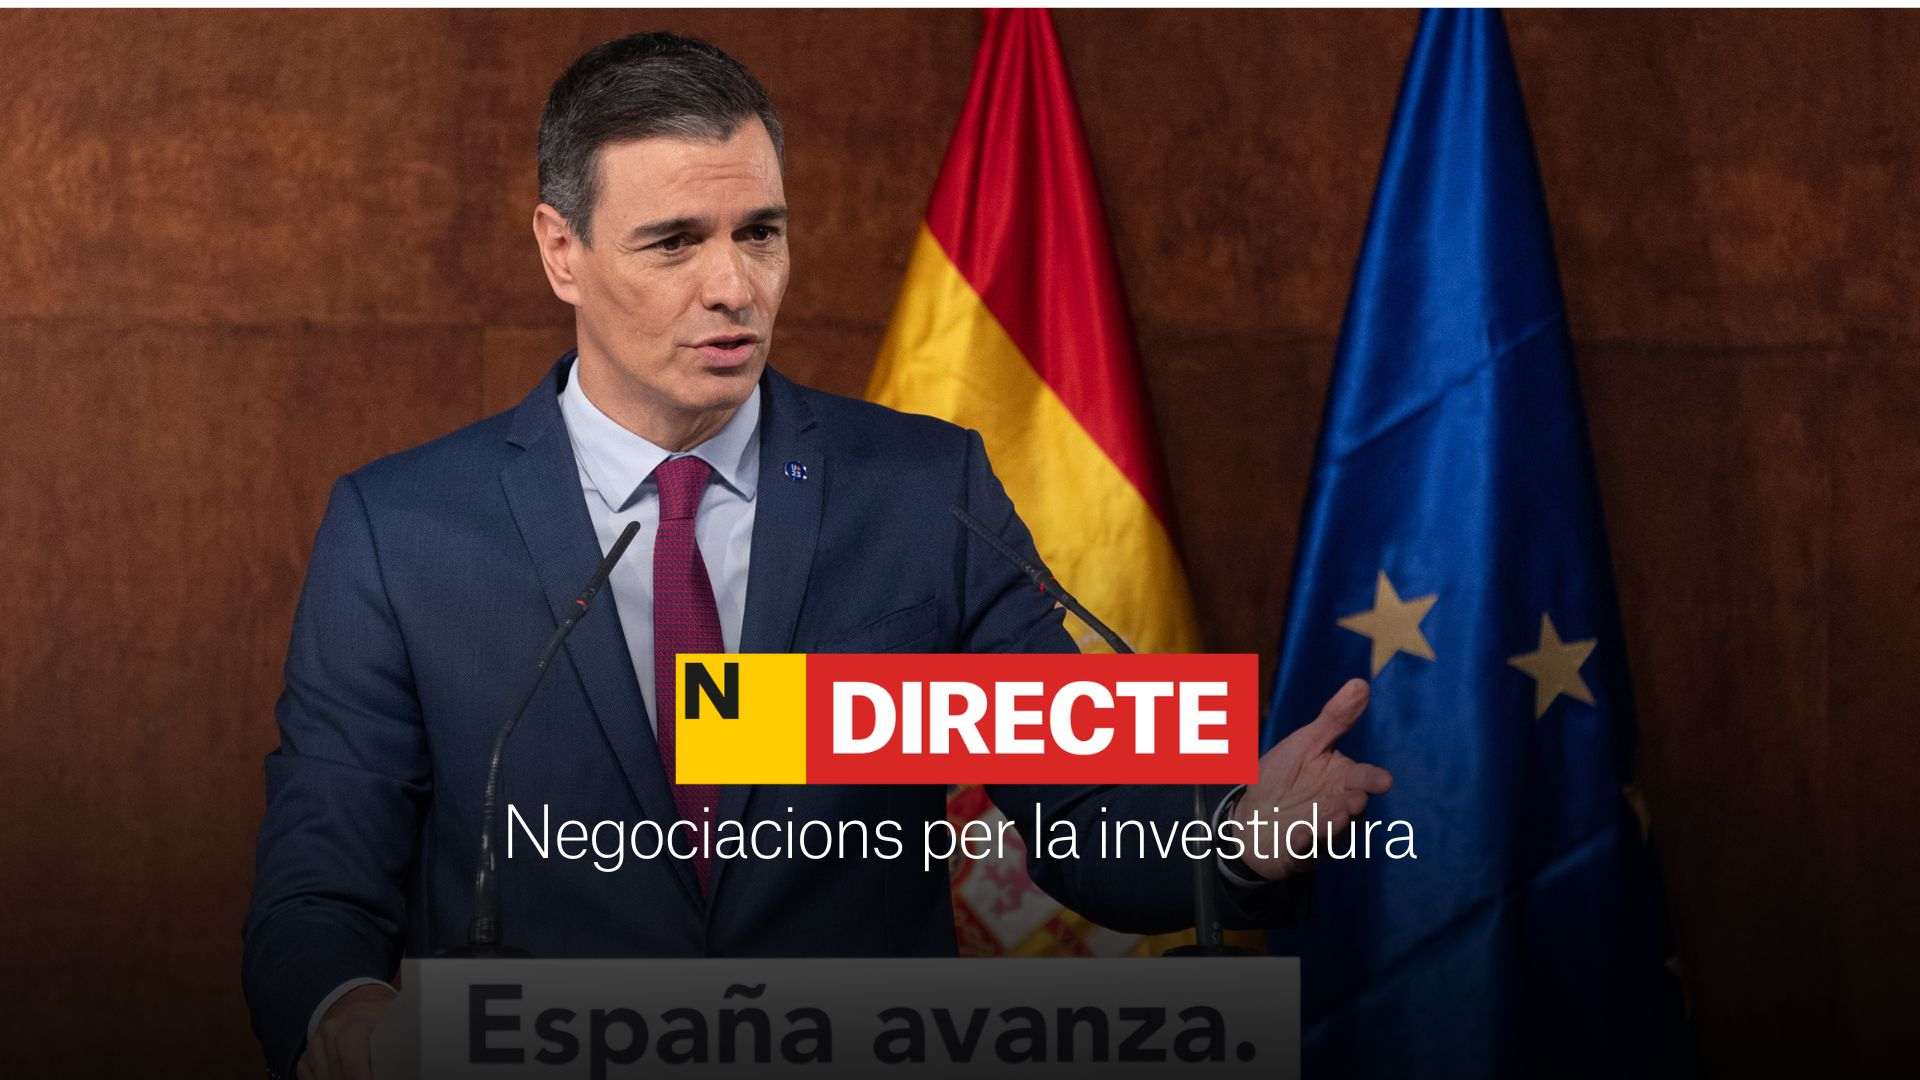 Investidura de Pedro Sánchez: negociacions, DIRECTE | Últimes notícies del 8 de novembre